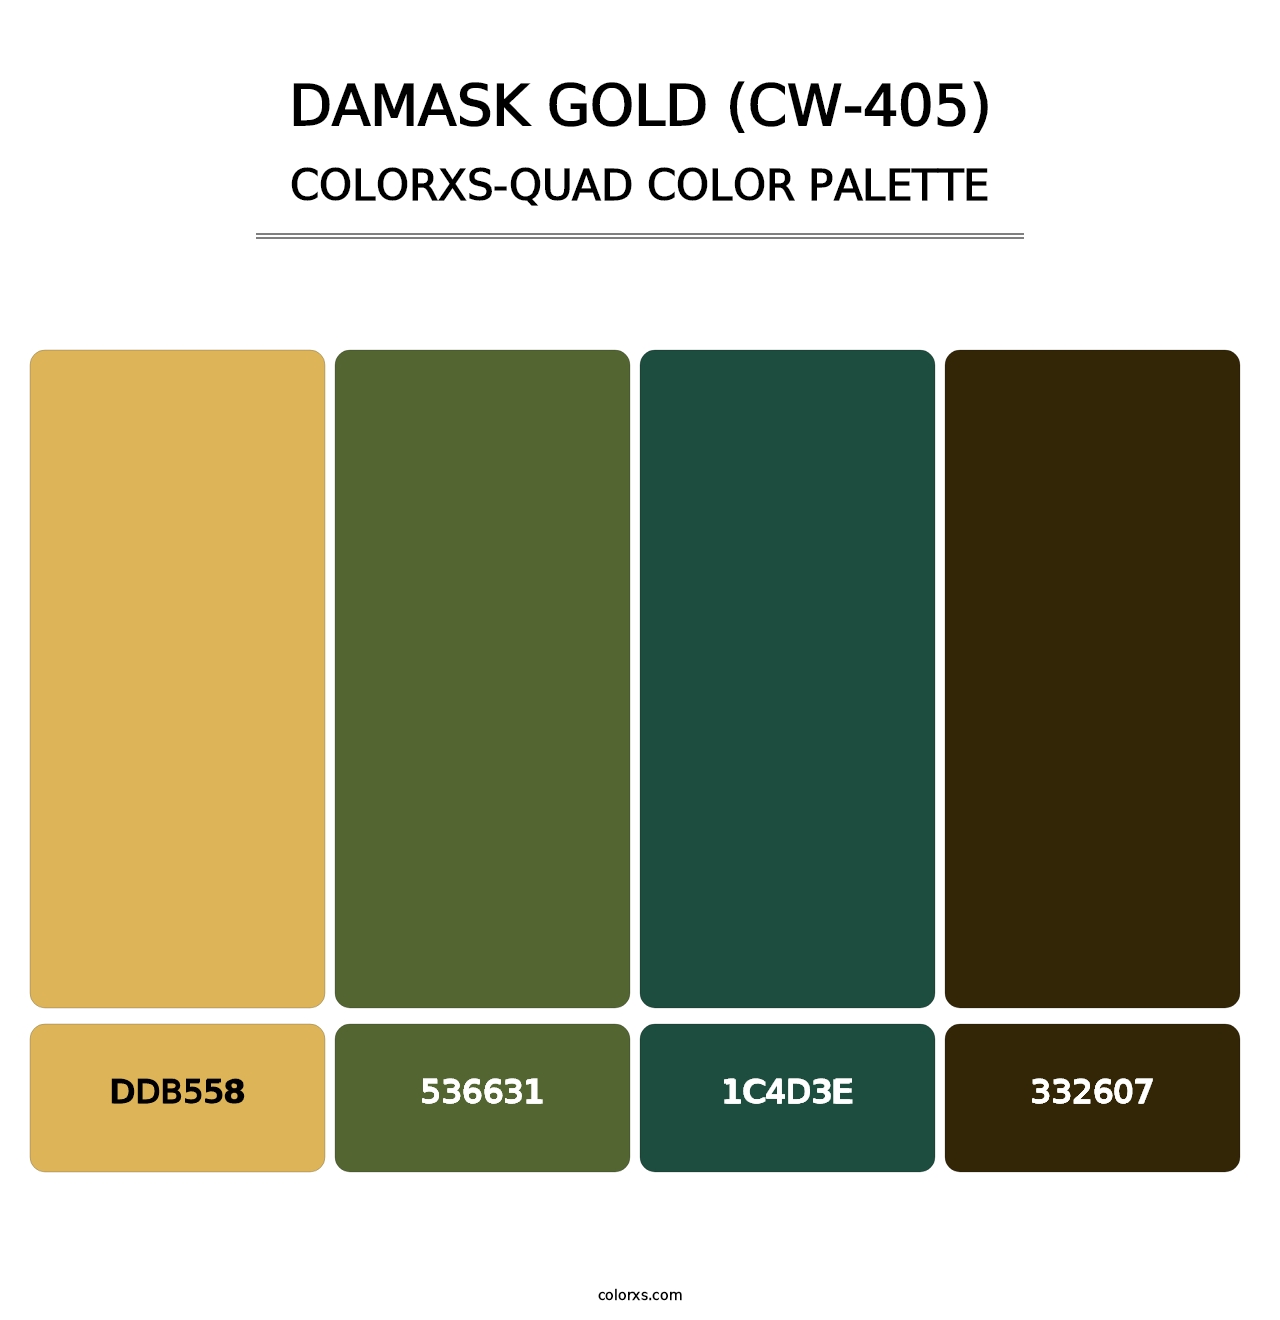 Damask Gold (CW-405) - Colorxs Quad Palette